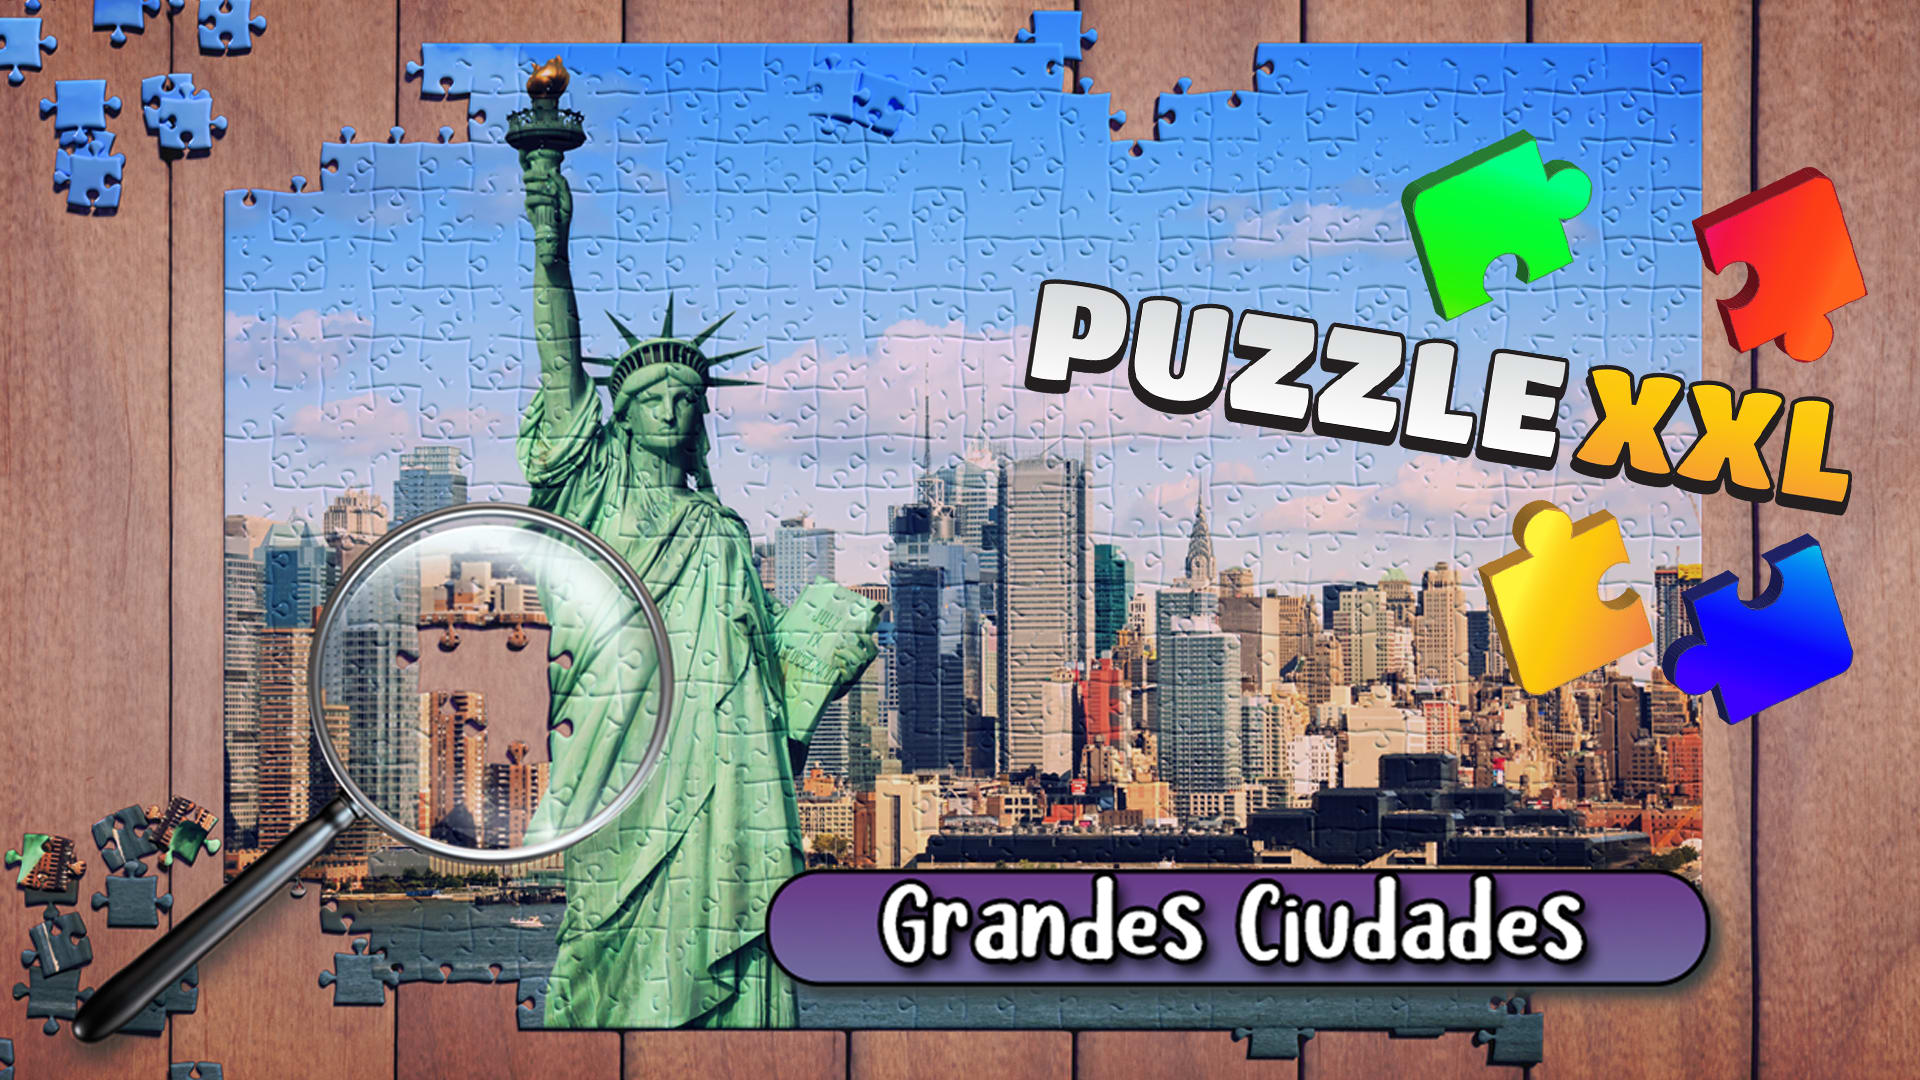 Puzzle XXL: Grandes Ciudades